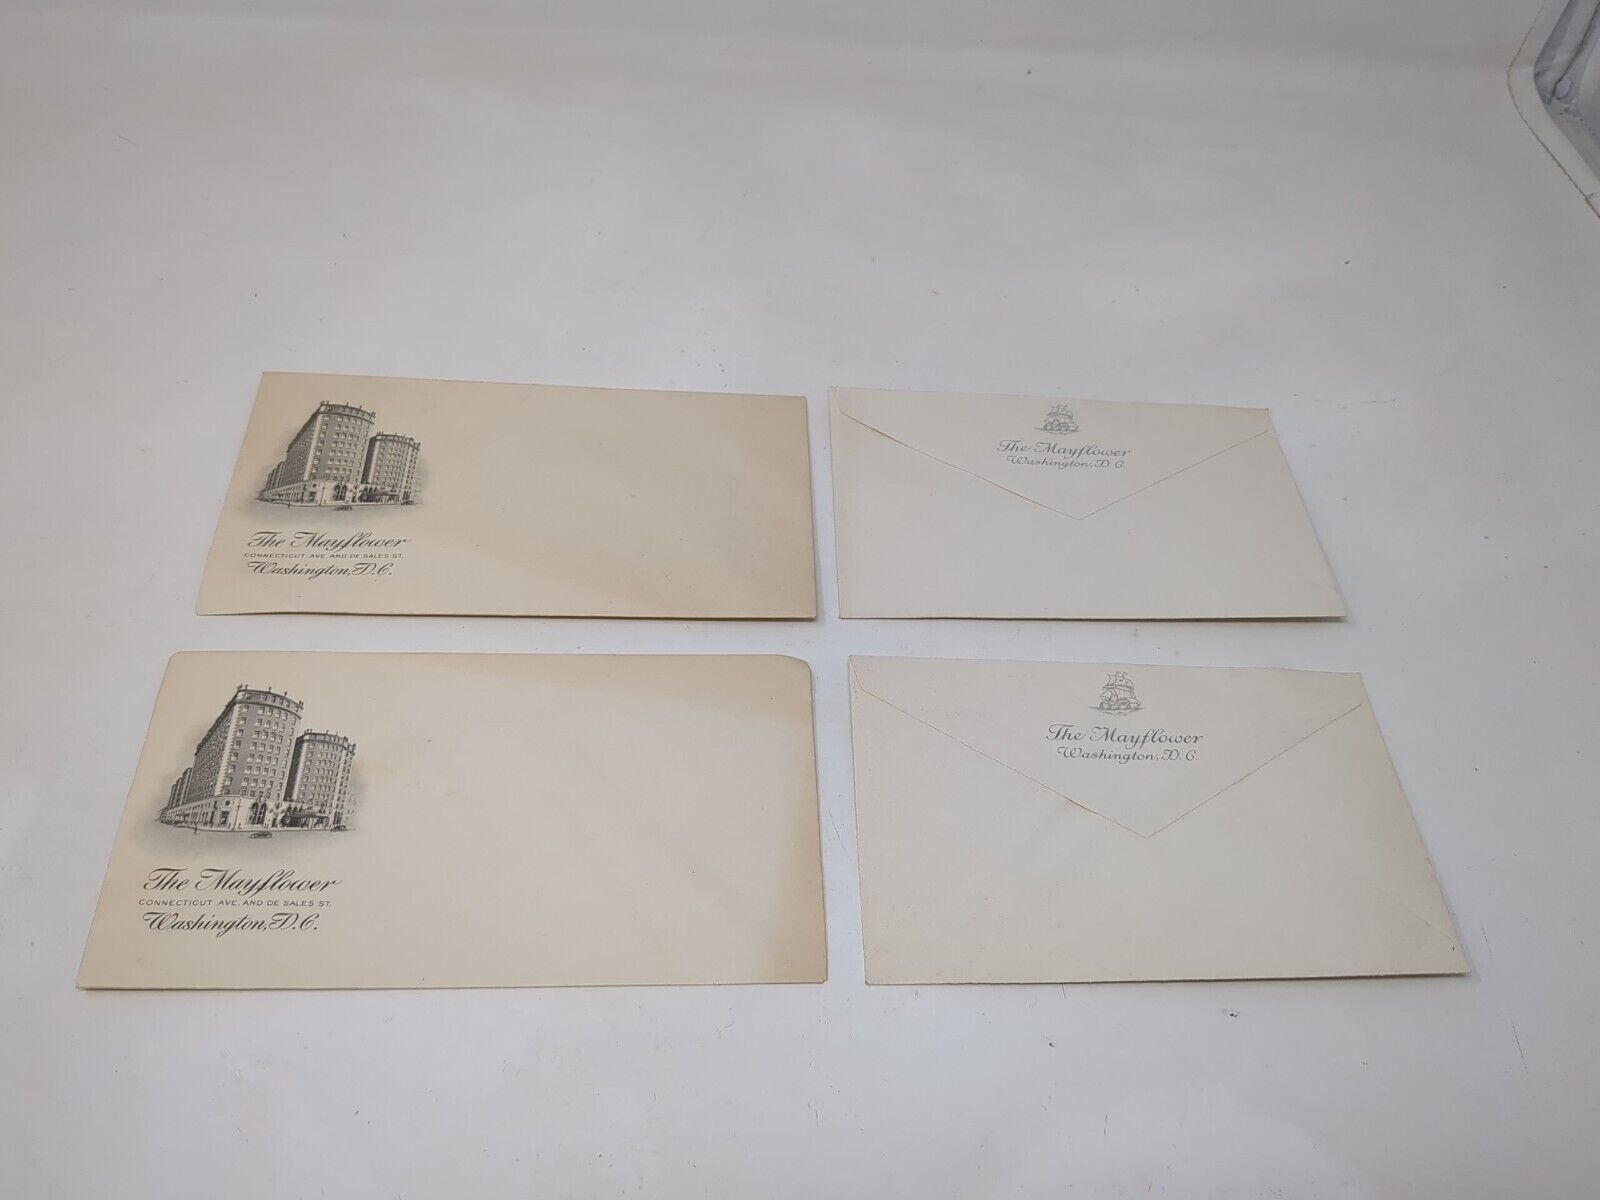 Mayflower Hotel Washington DC Letter Envelope Mailer With Logo VTG 1940s 1950s